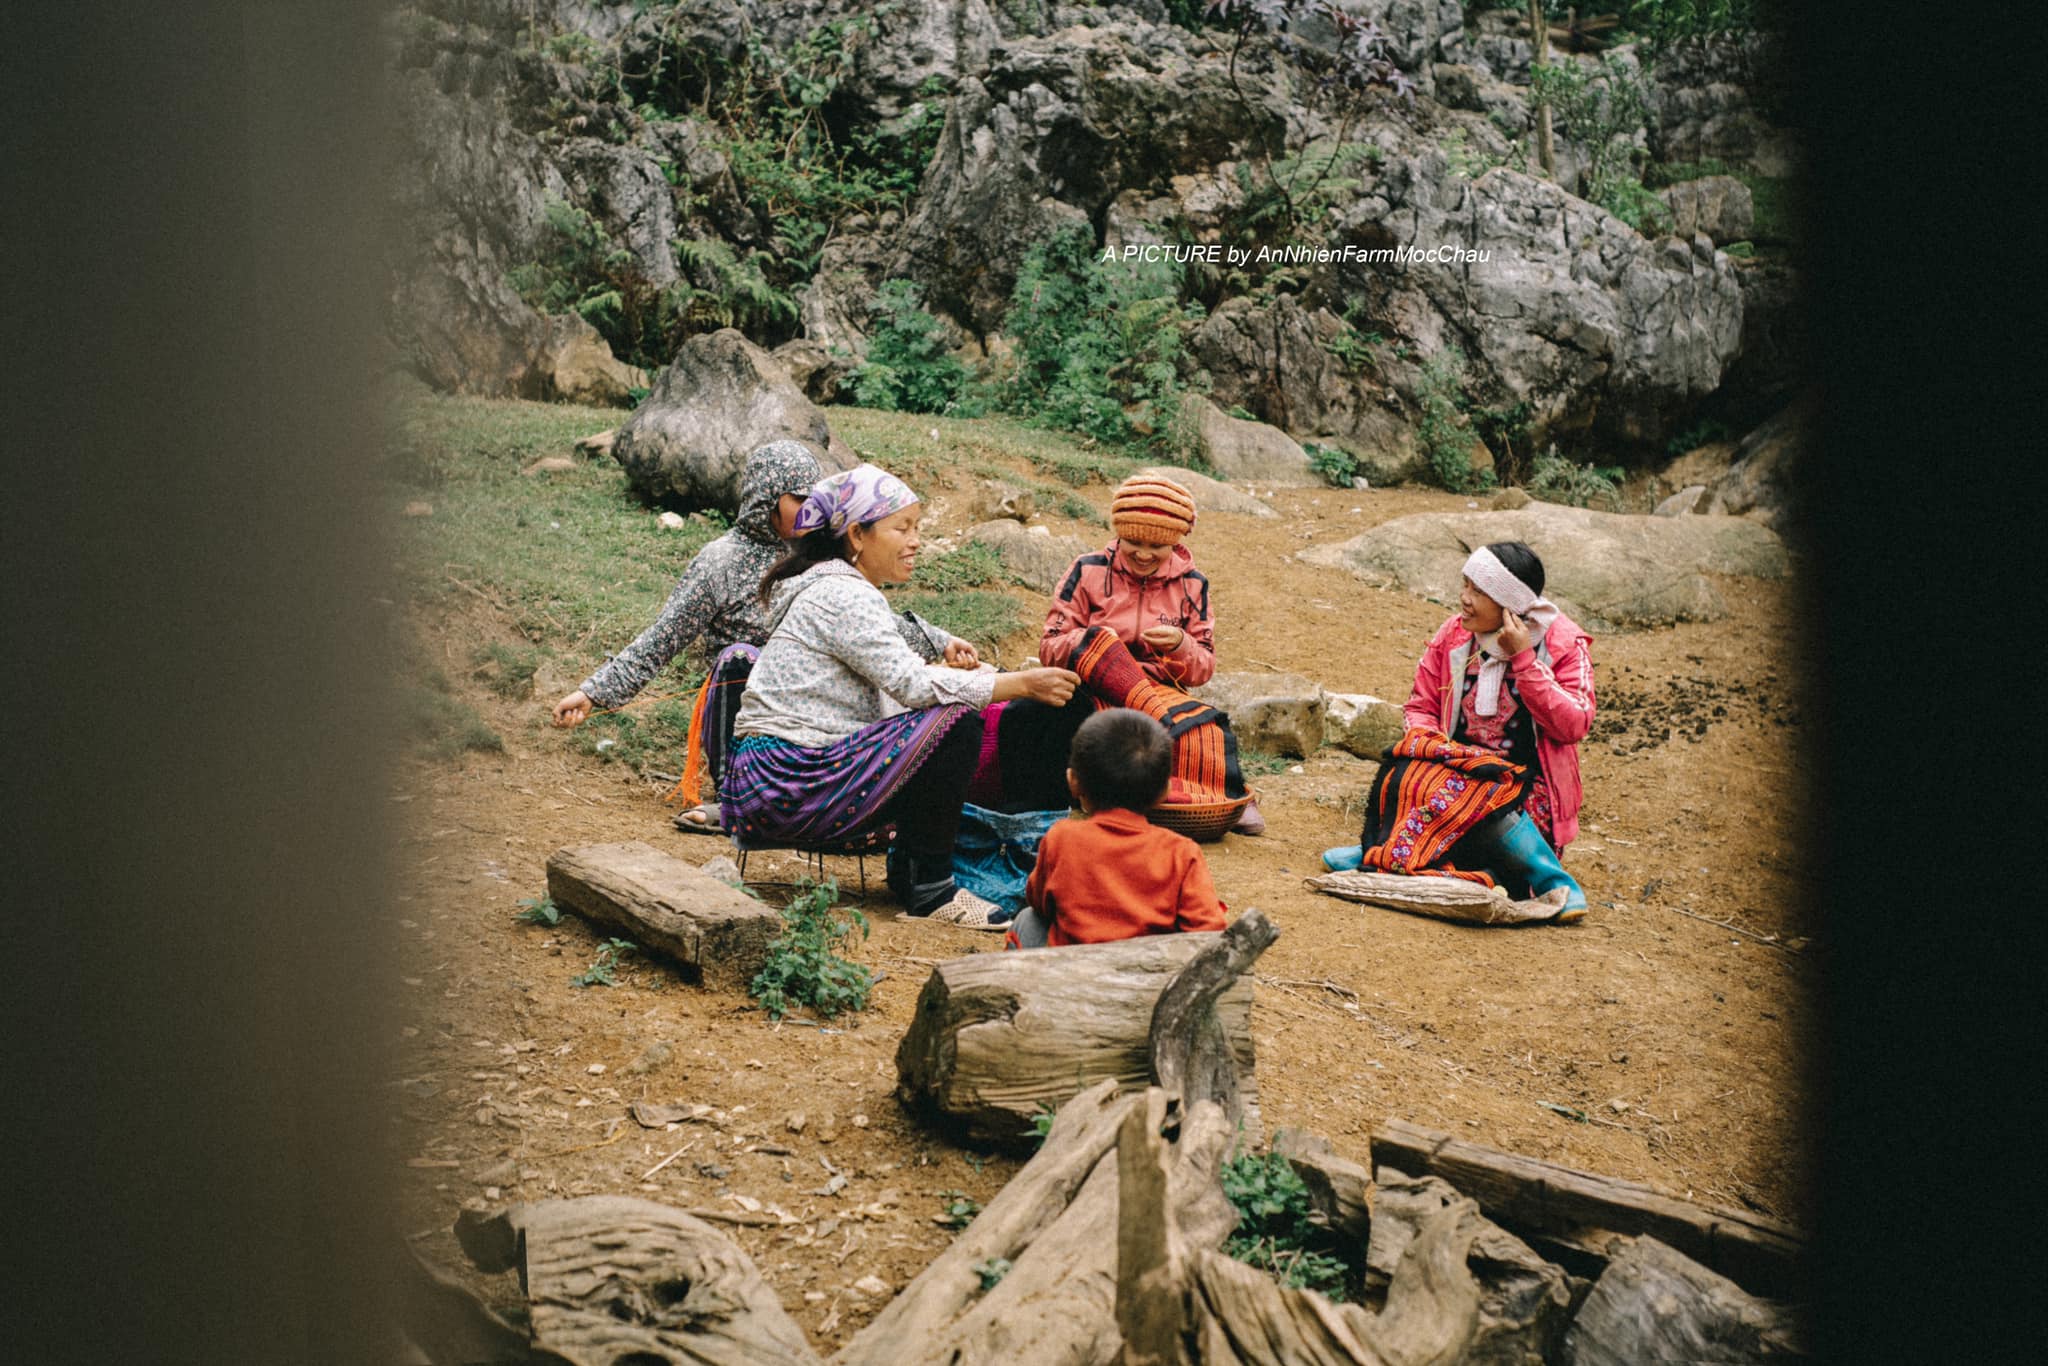 Tìm hiểu cuộc sống của dân bản địa - Ảnh: Chung Nguyễn